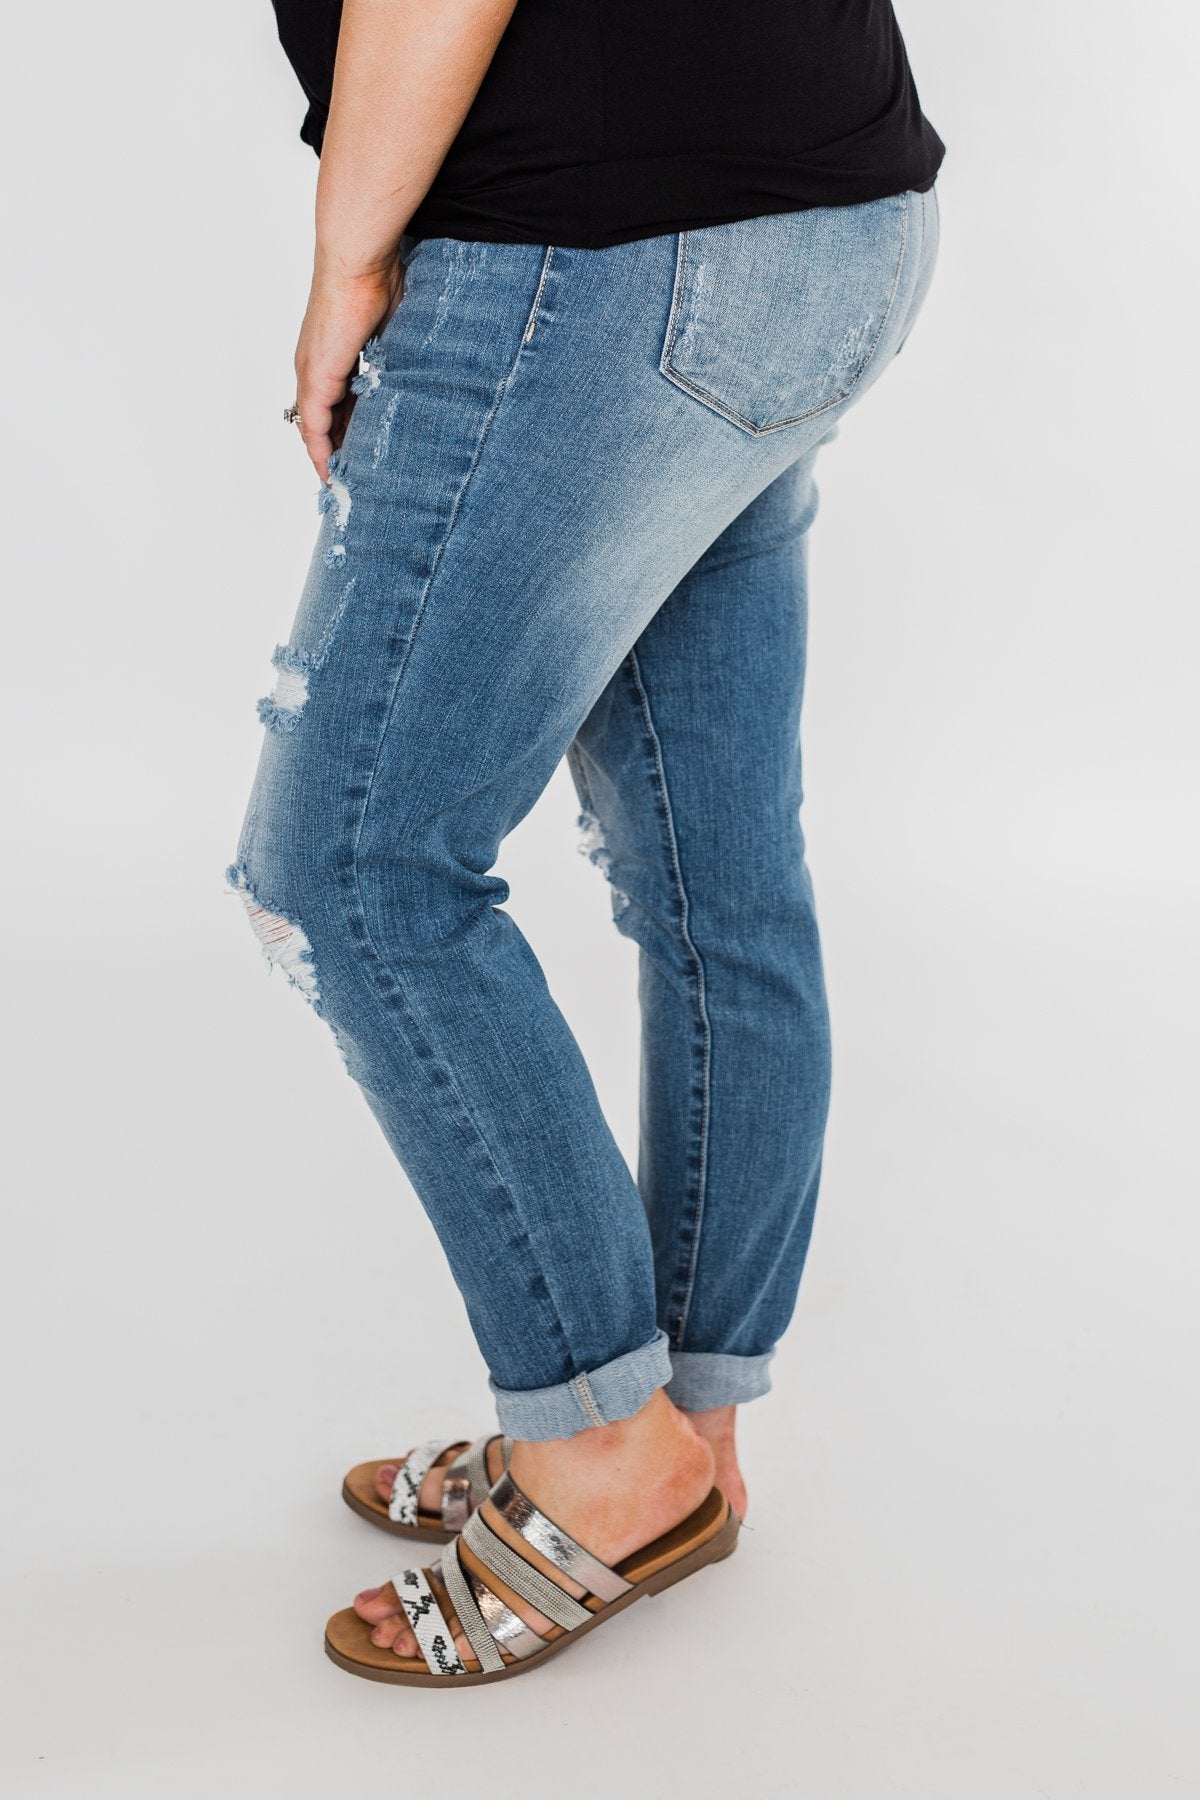 C'est Toi Distressed Skinny Jeans- Amanda Wash